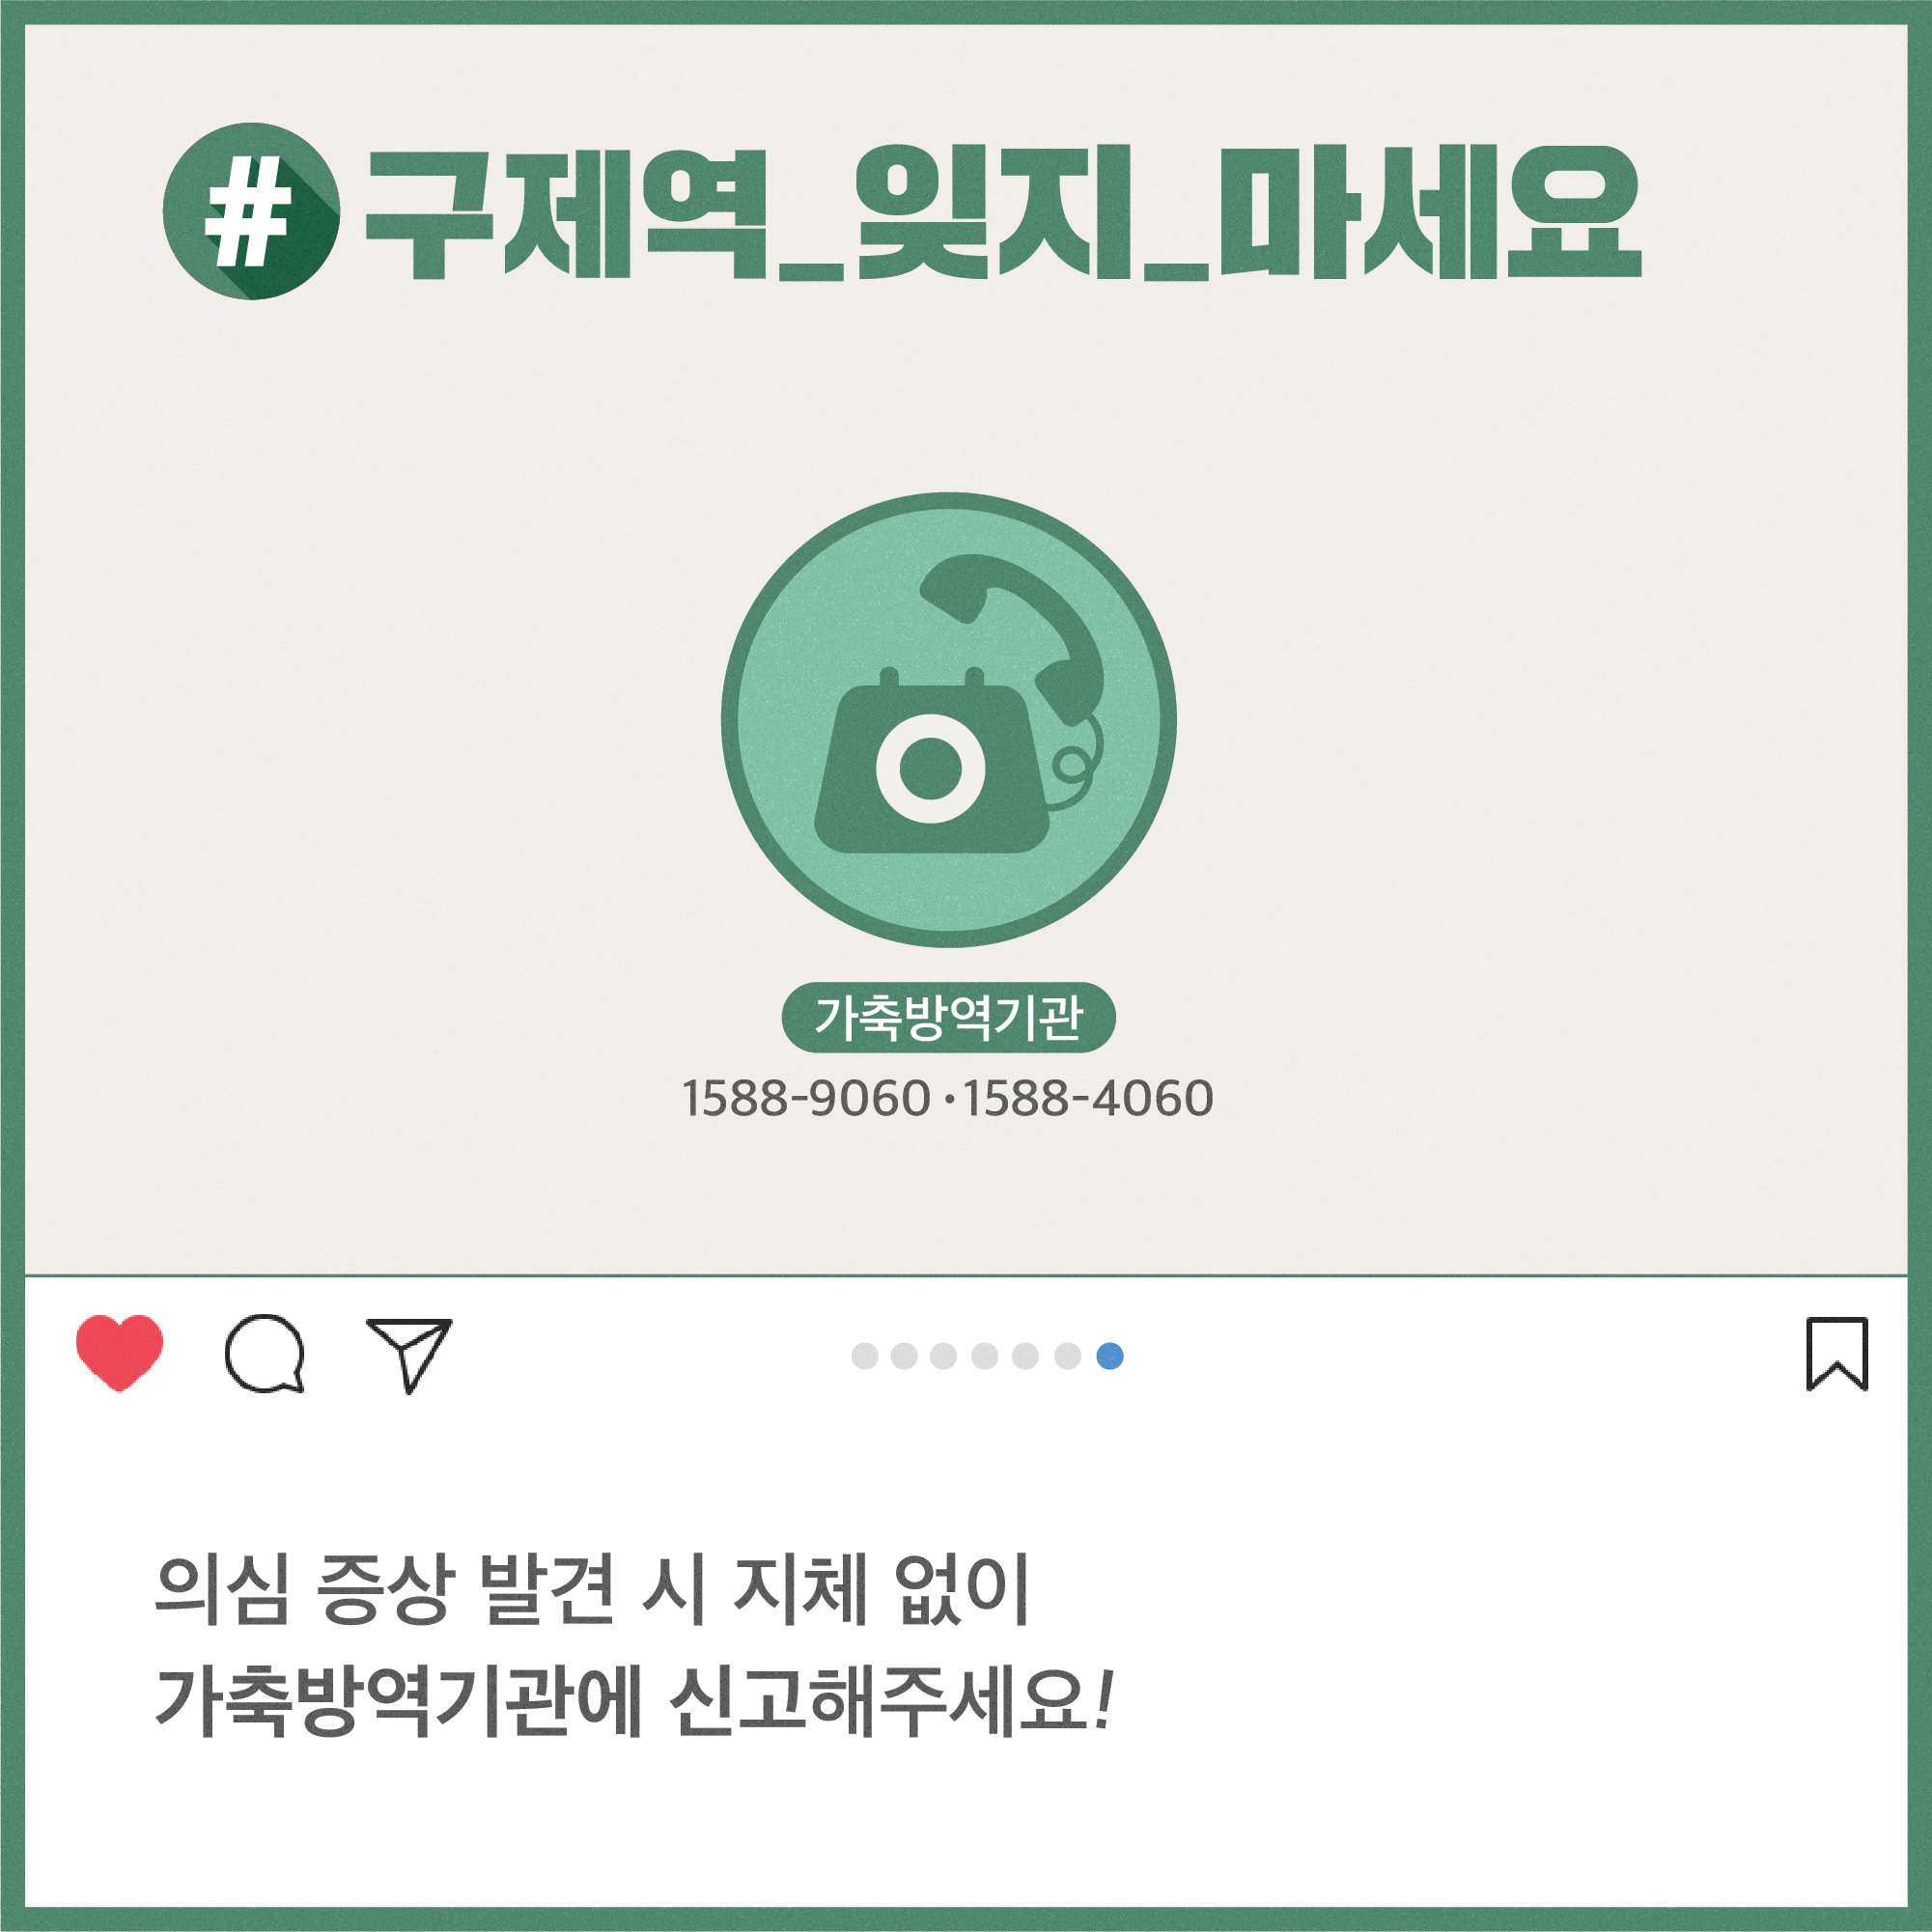 구제역 해시태그로 톺아보기 구제역_카드뉴스3-08.png